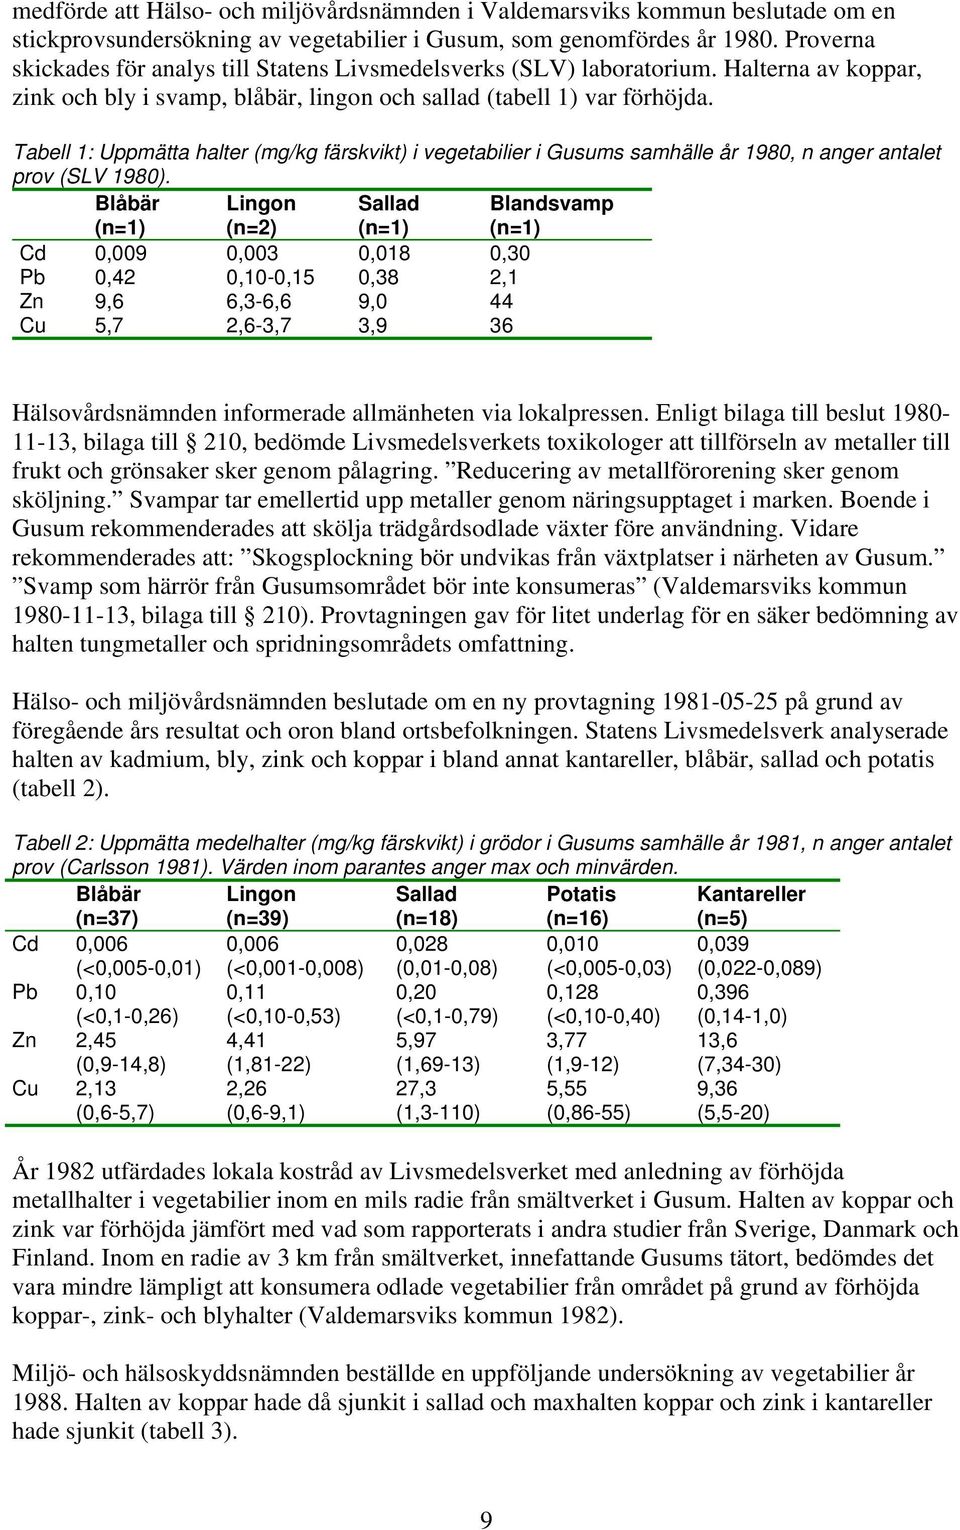 Tabell 1: Uppmätta halter (mg/kg färskvikt) i vegetabilier i Gusums samhälle år 1980, n anger antalet prov (SLV 1980).